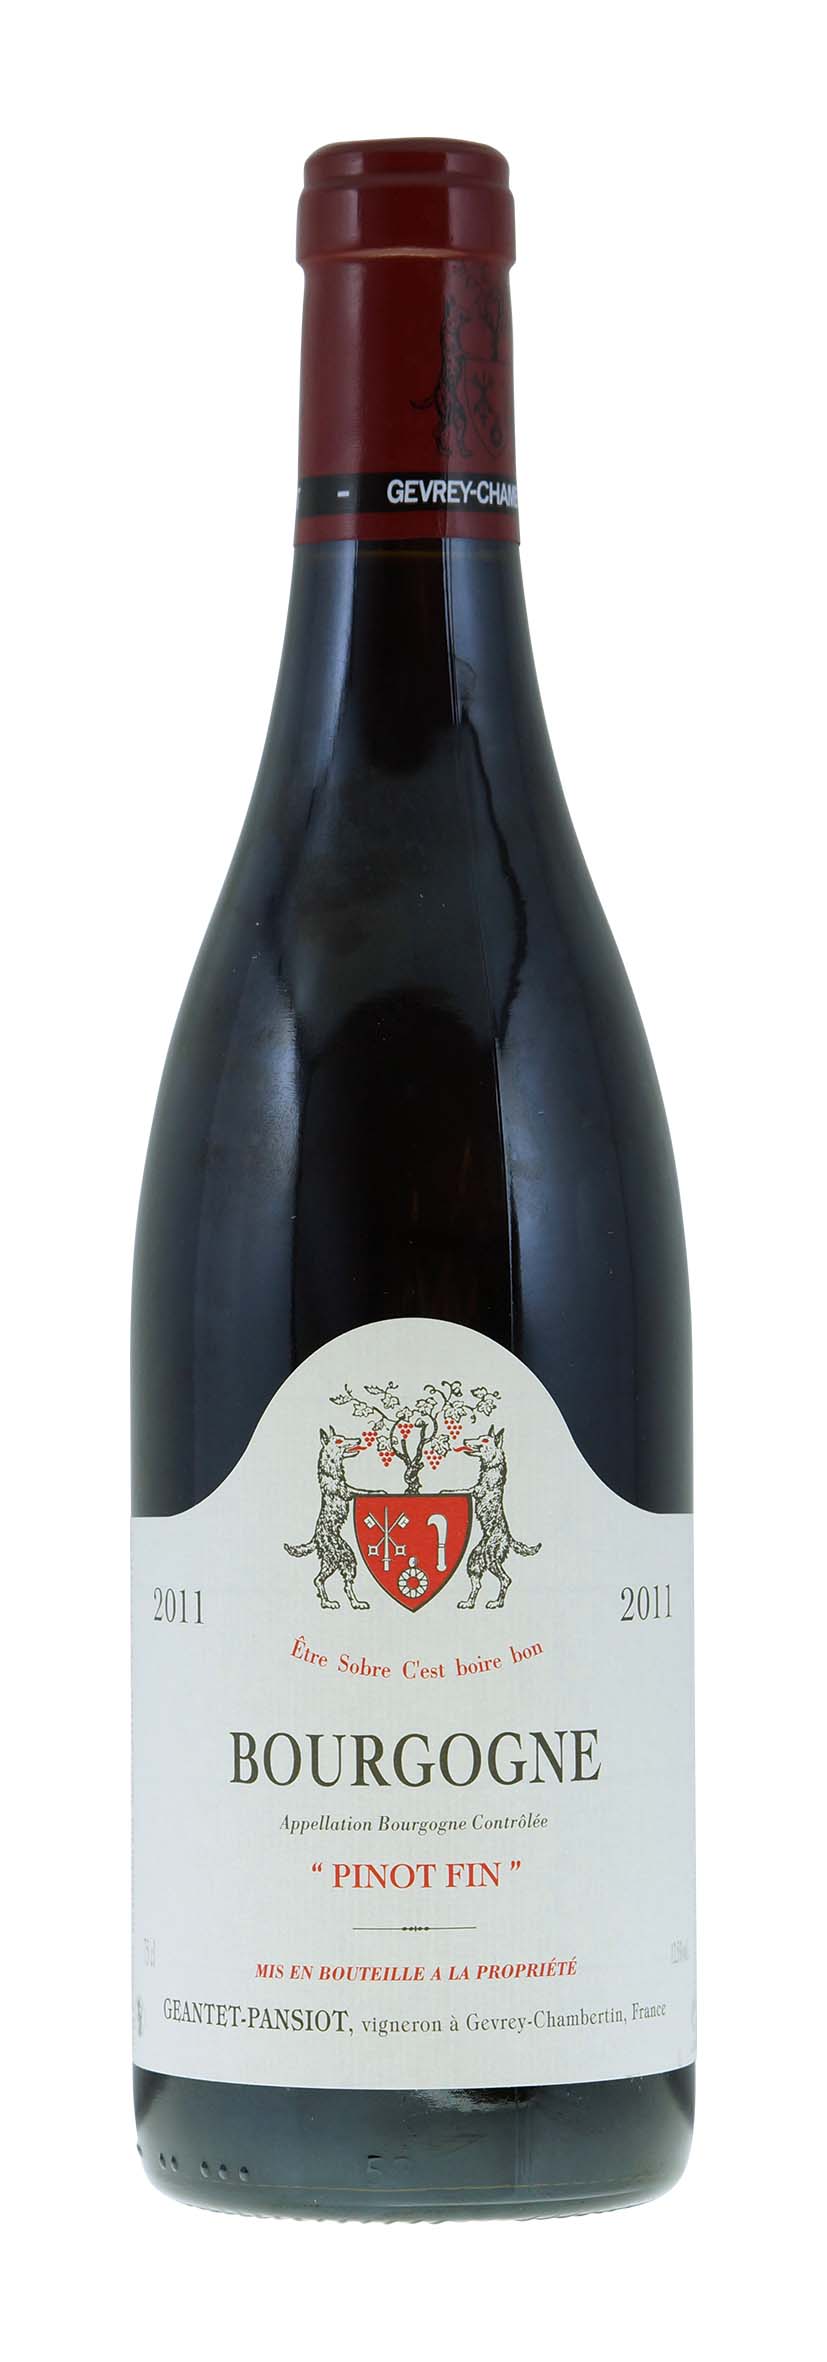 Bourgogne AOC Pinot Fin 2011